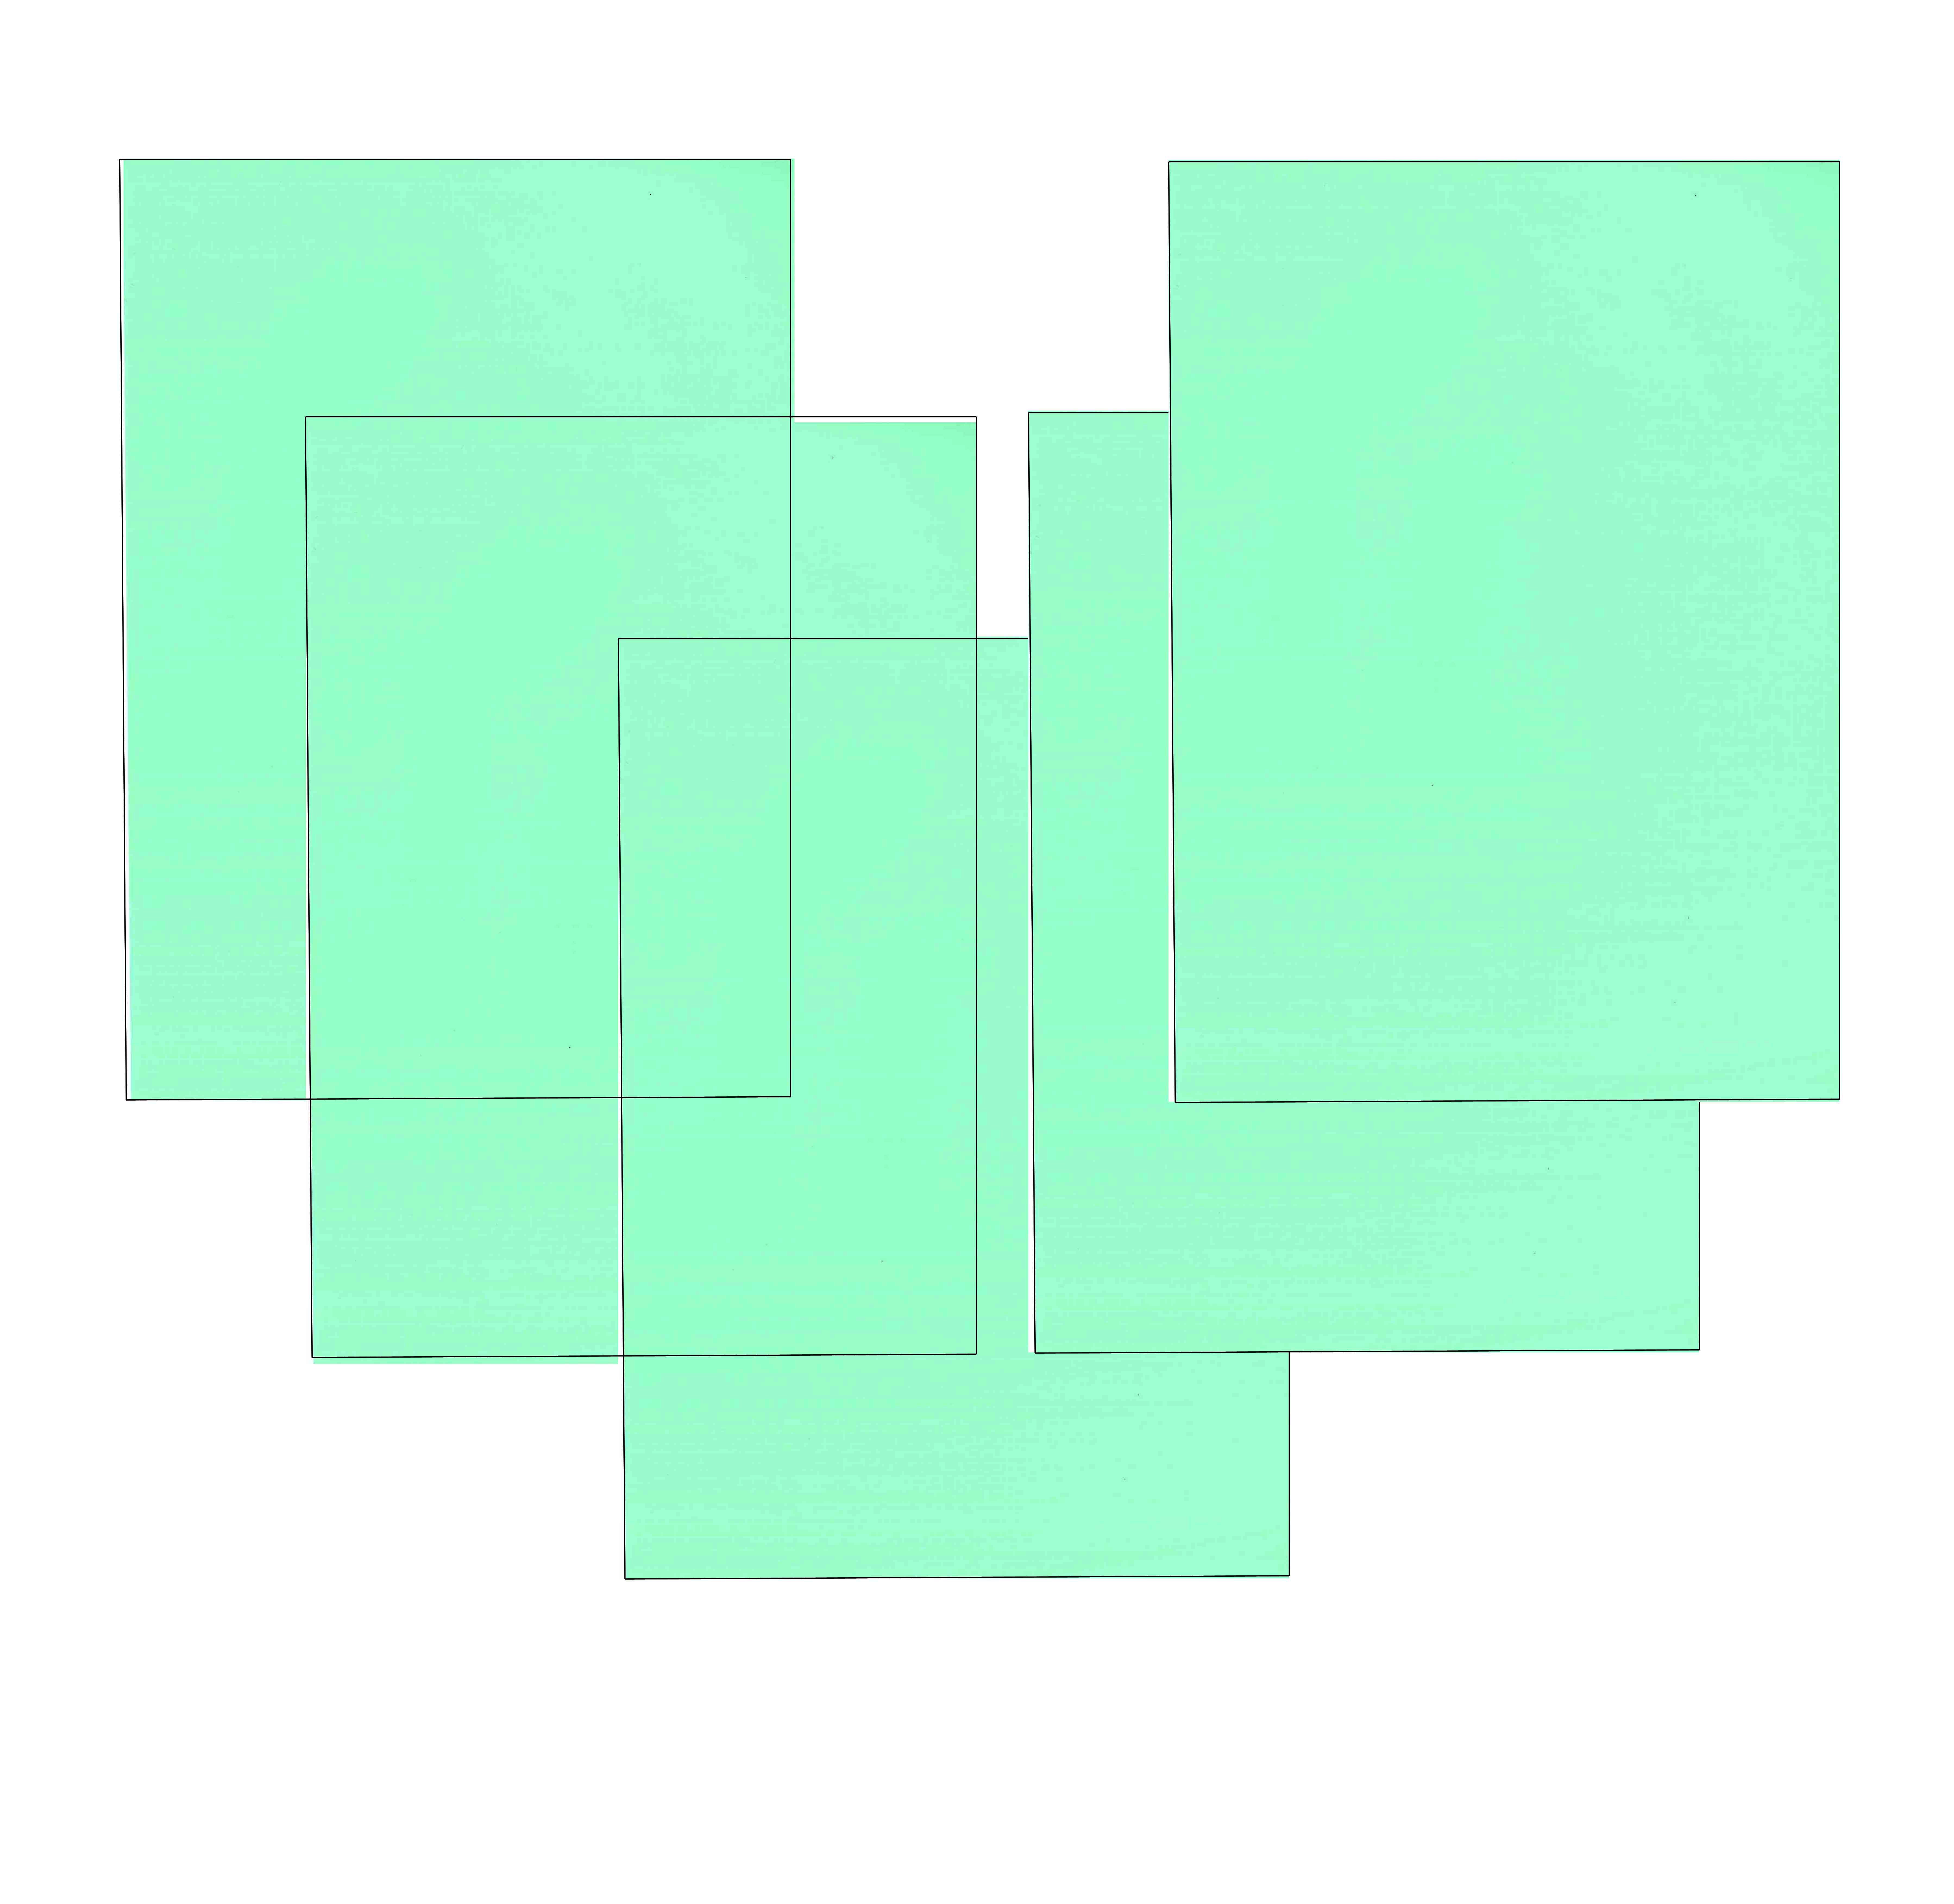 Papel color DIN A4 80 grs verde paquete 100 hojas